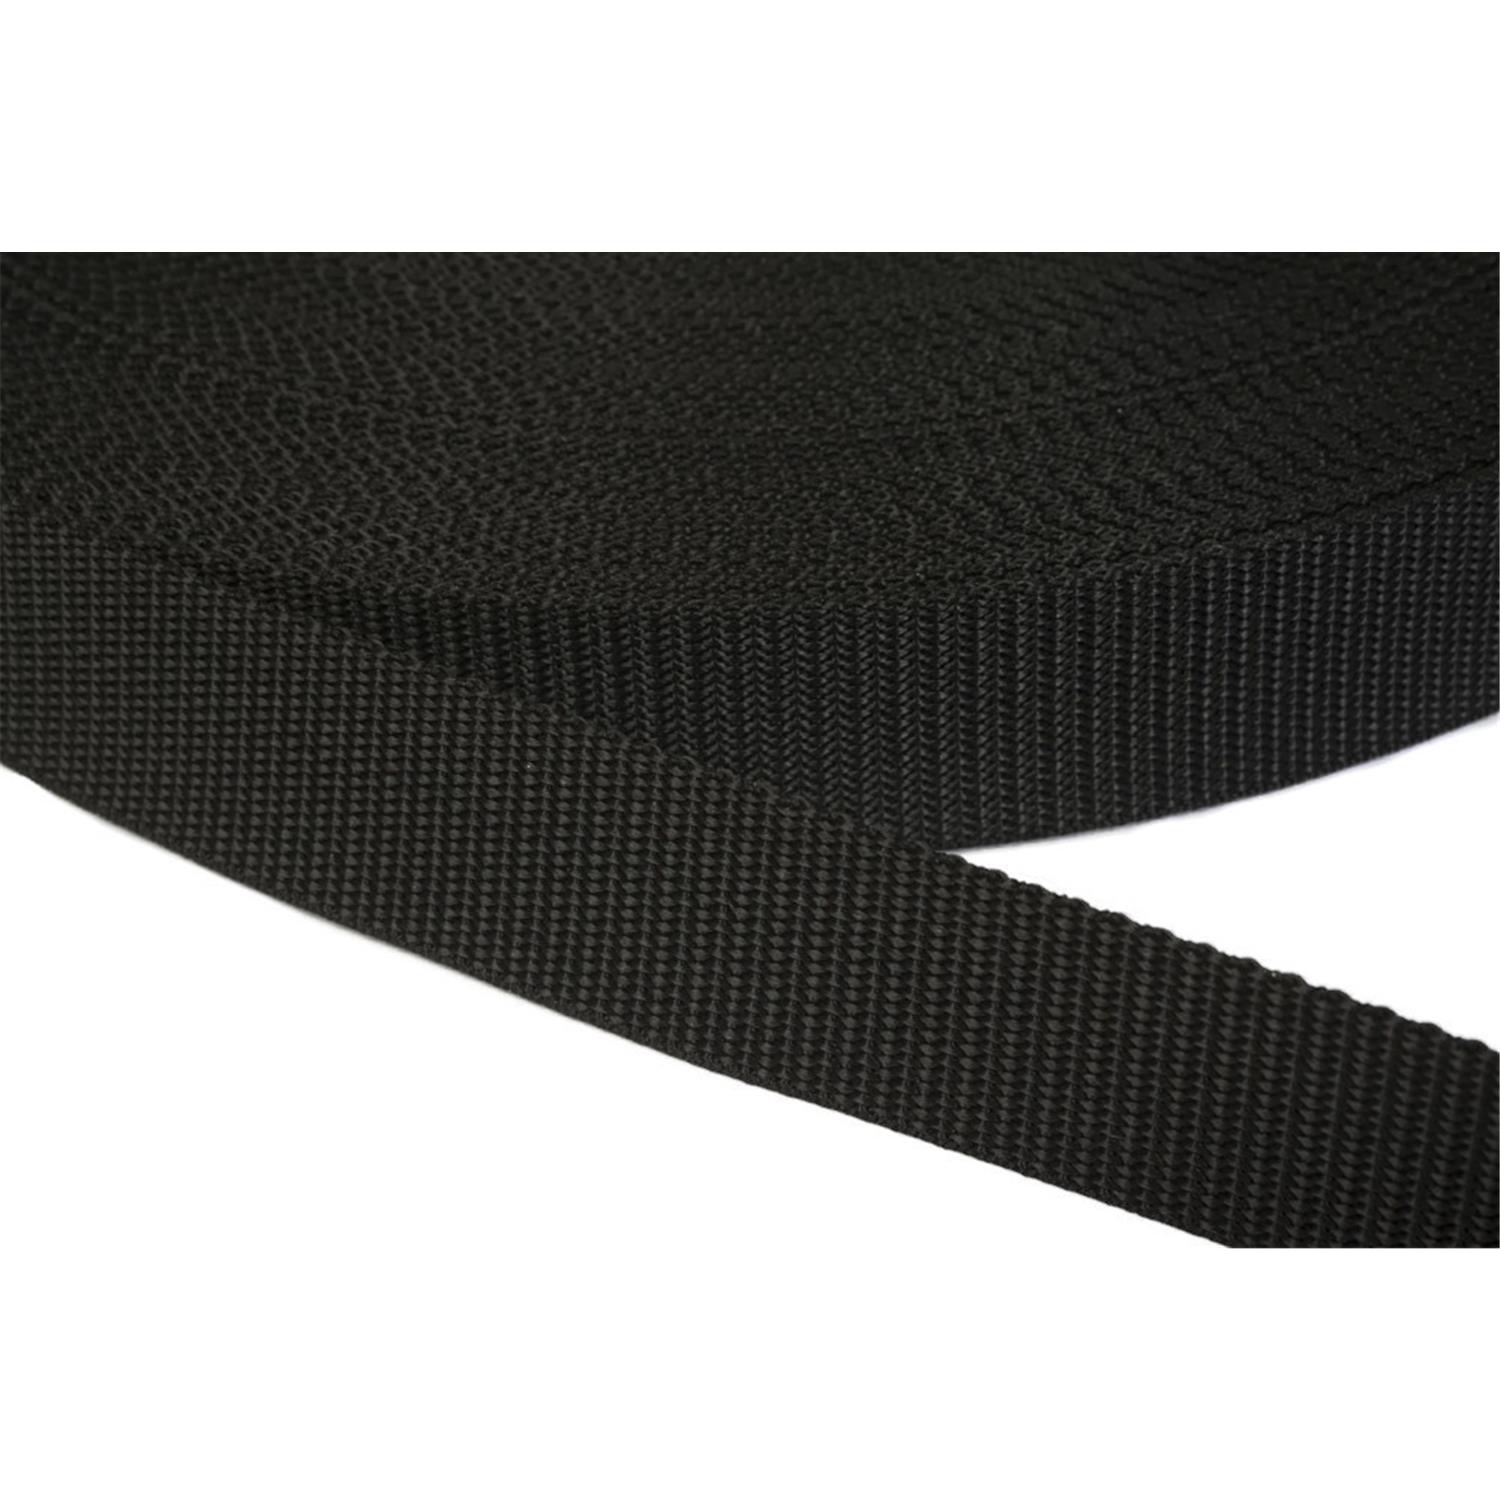 Gurtband 25mm breit aus Polypropylen in 41 Farben 41 - schwarz 6 Meter